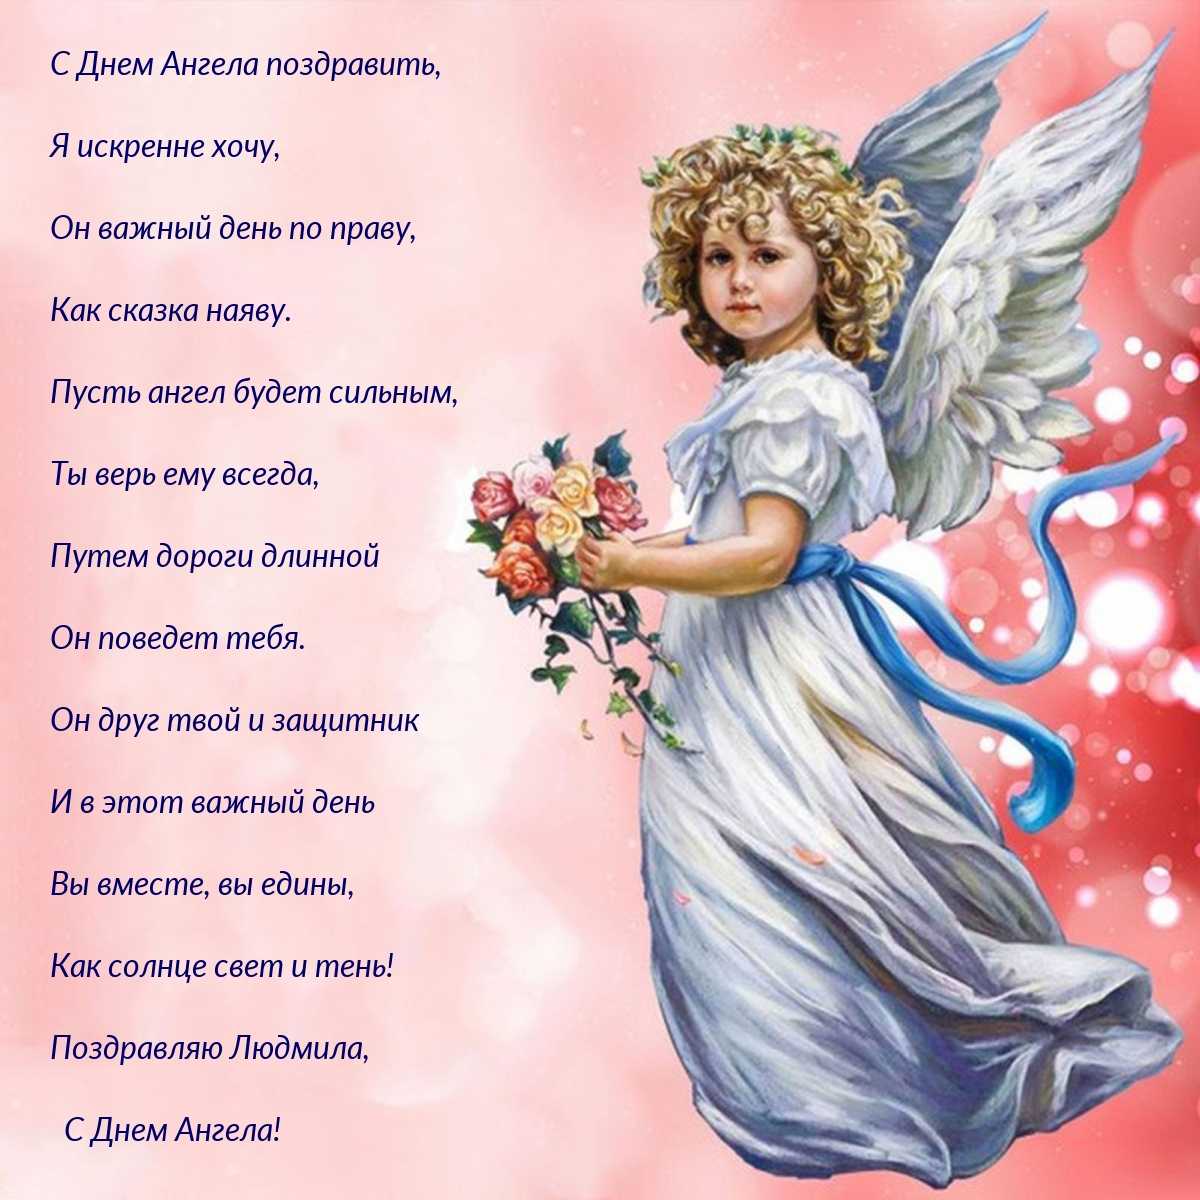 Именины владислава по церковному календарю — православный день ангела